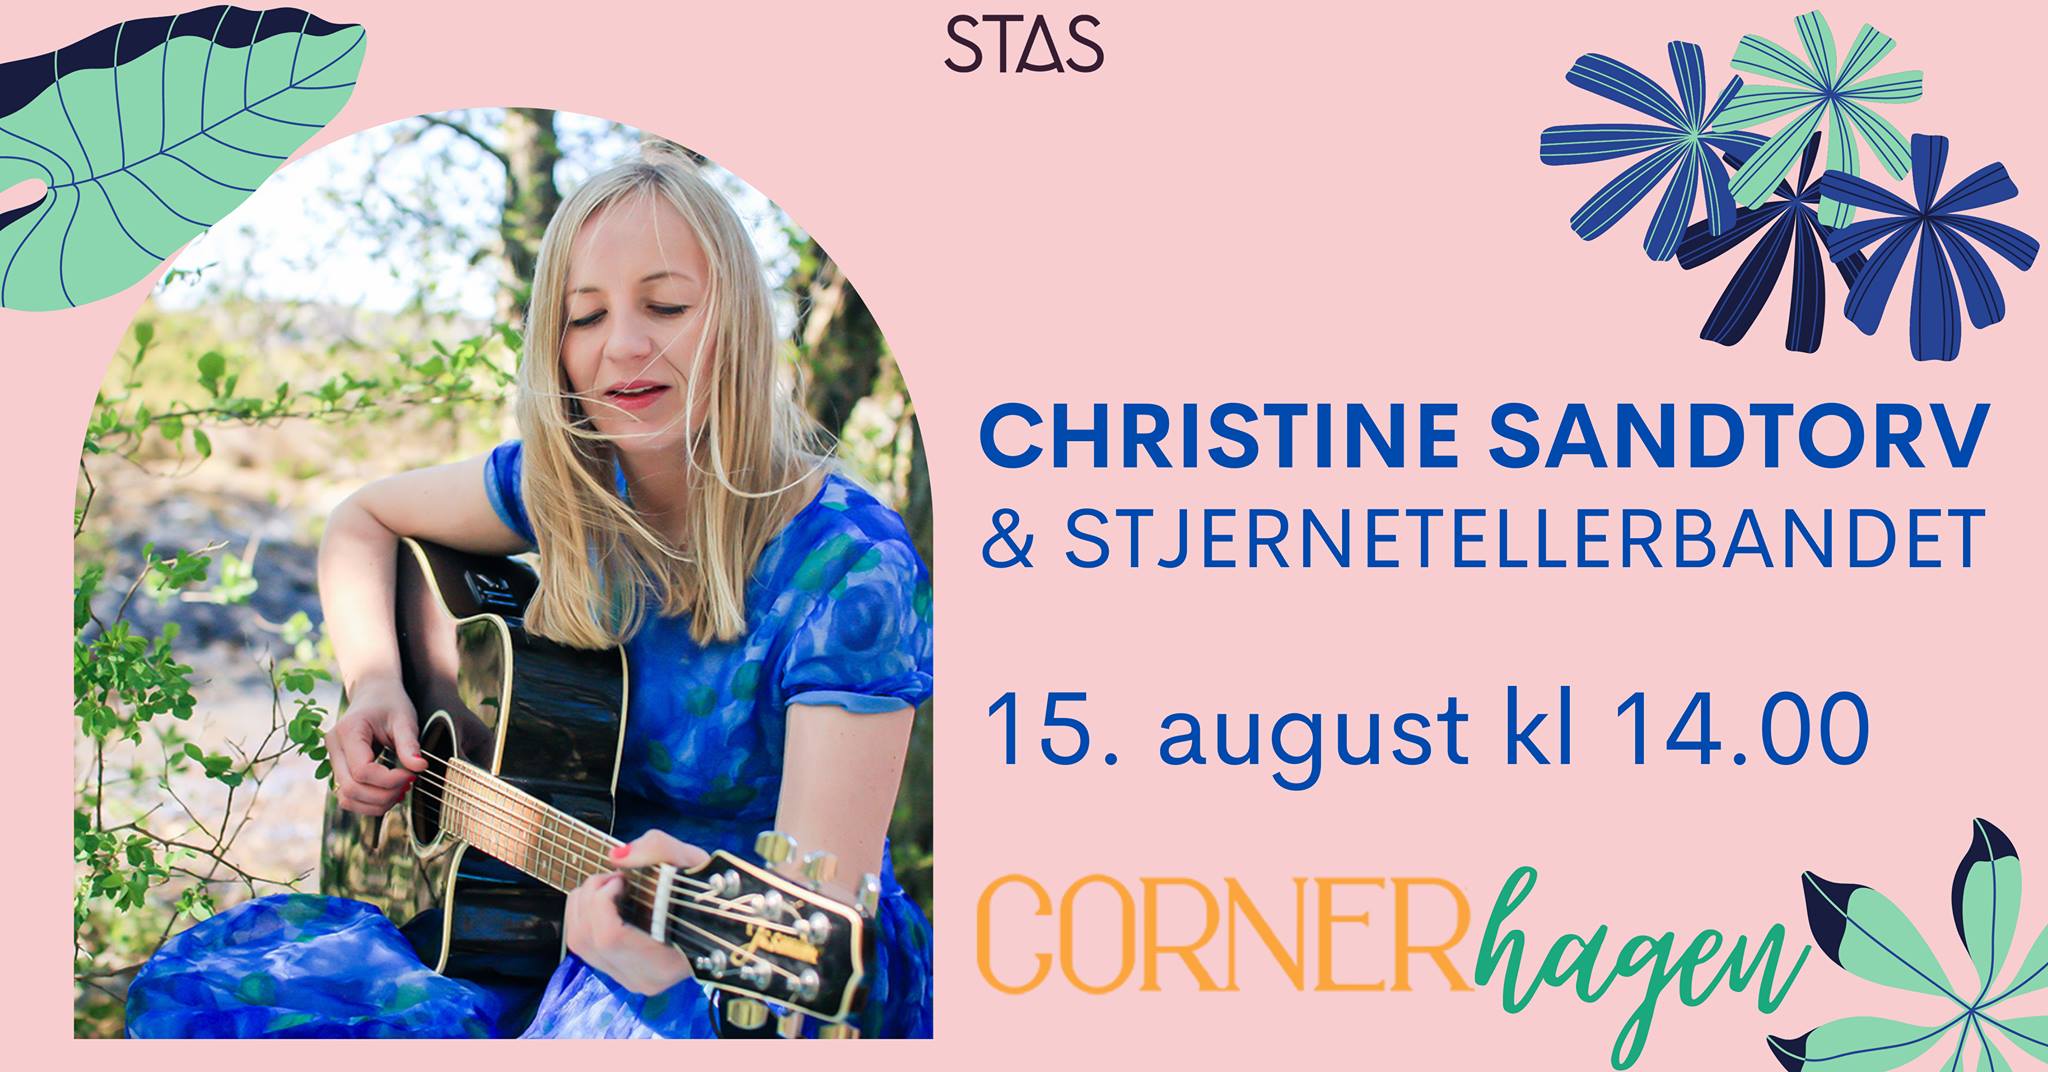 Christine Sandtorv og Stjernetellerbandet i Cornerhagen  - Stas Artist 